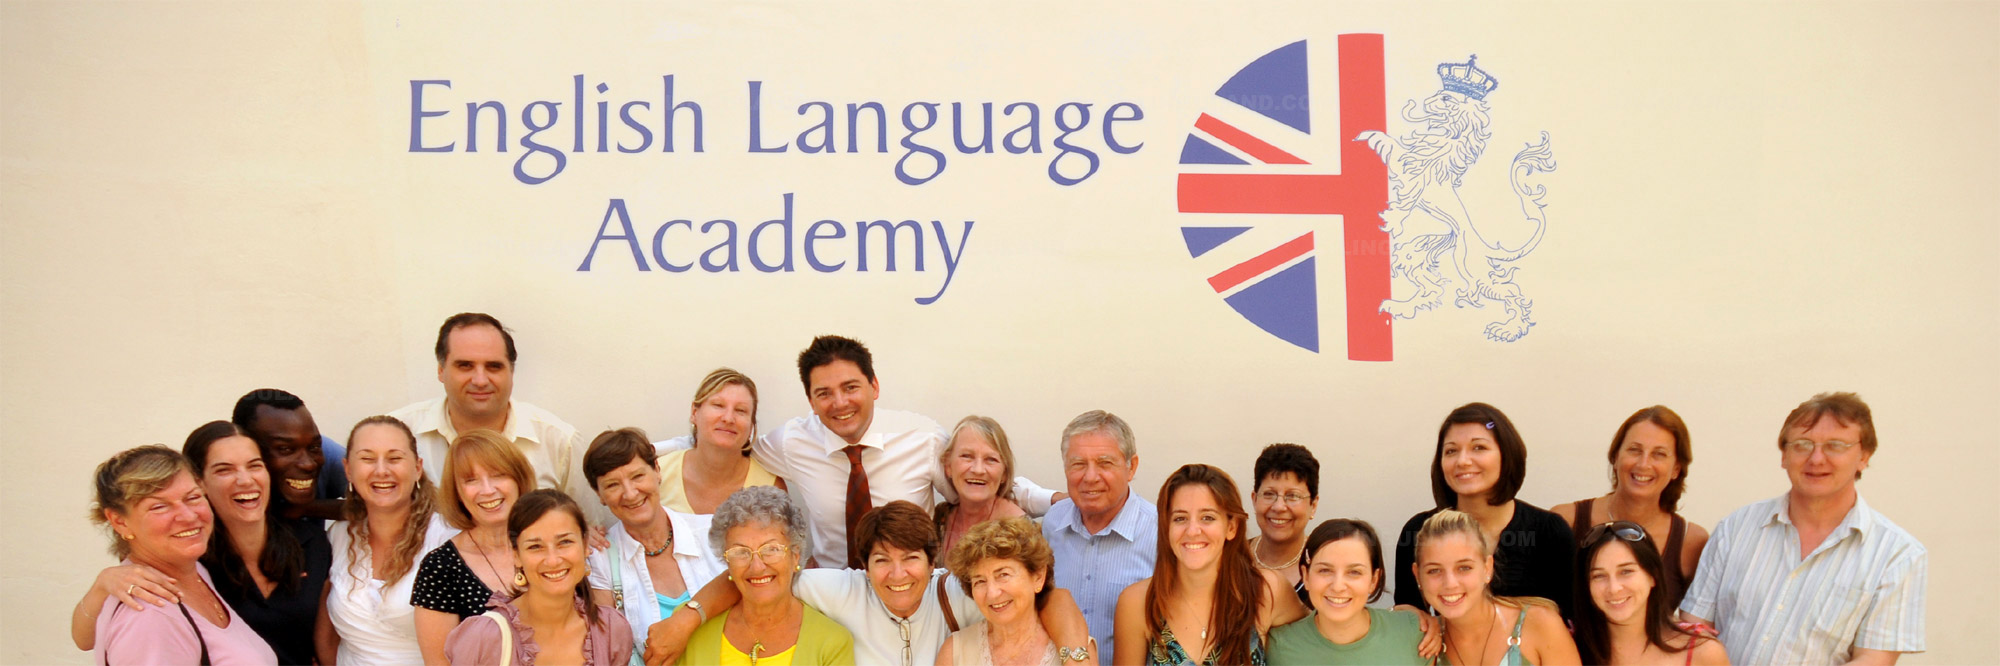 Experiencias y evaluaciones de English Language Academy